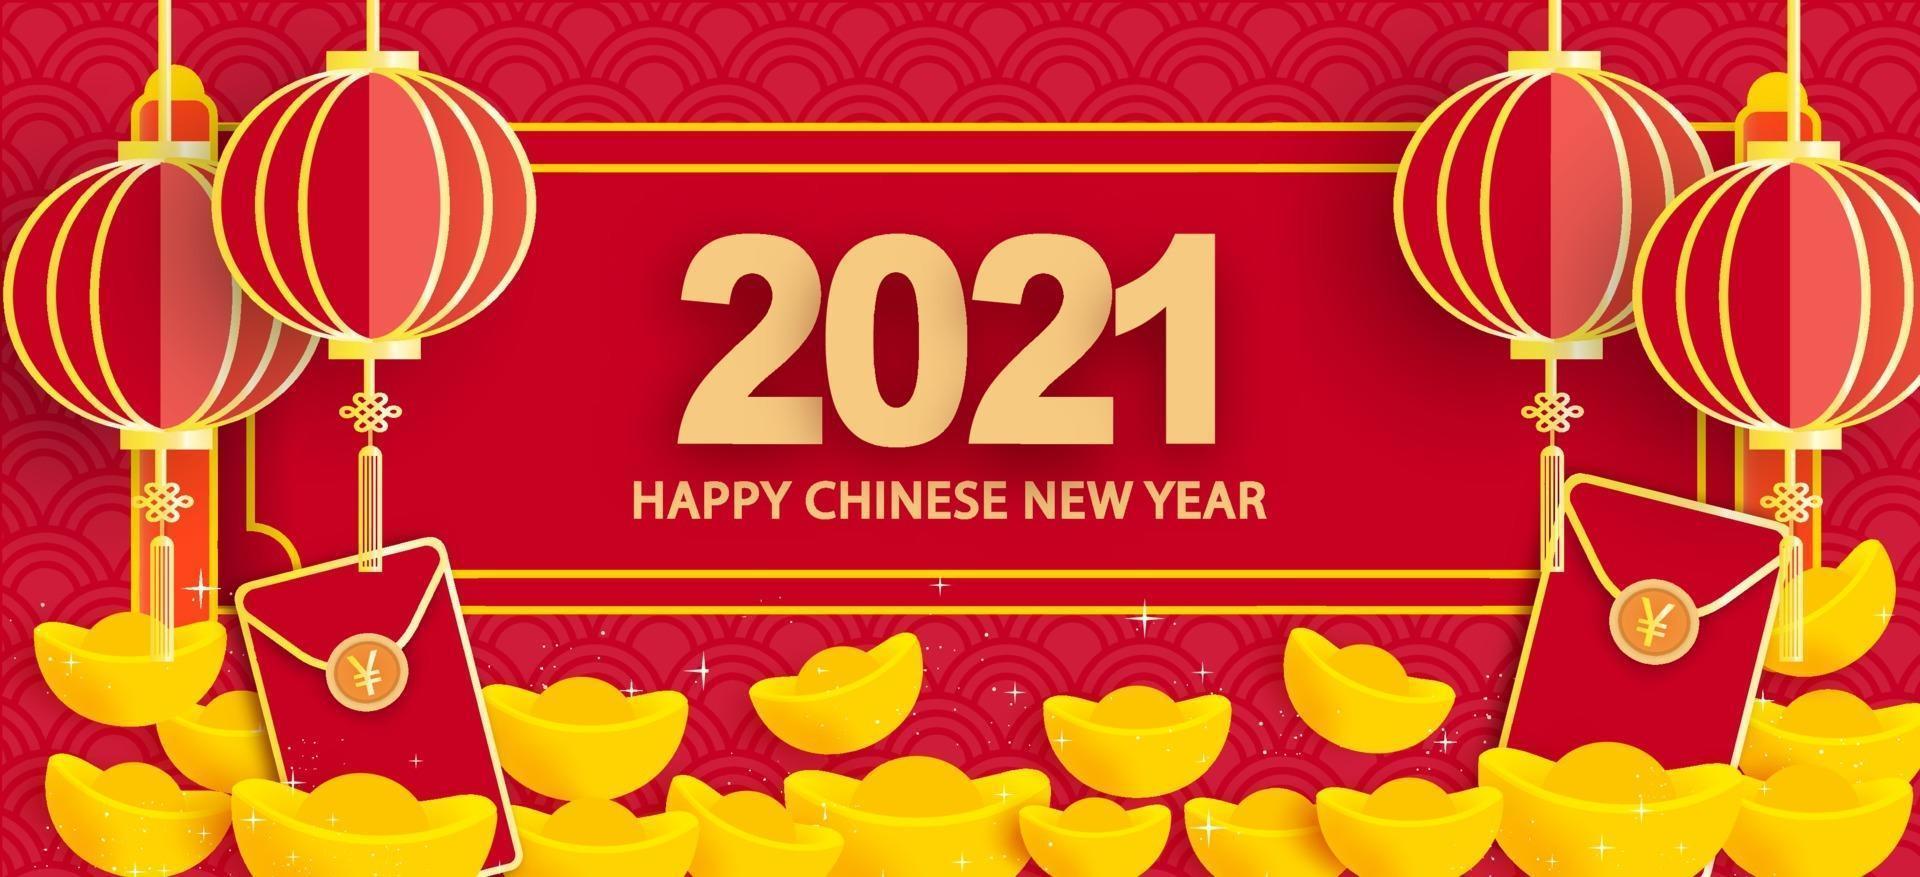 ano novo chinês 2021 ano da bandeira do boi vetor